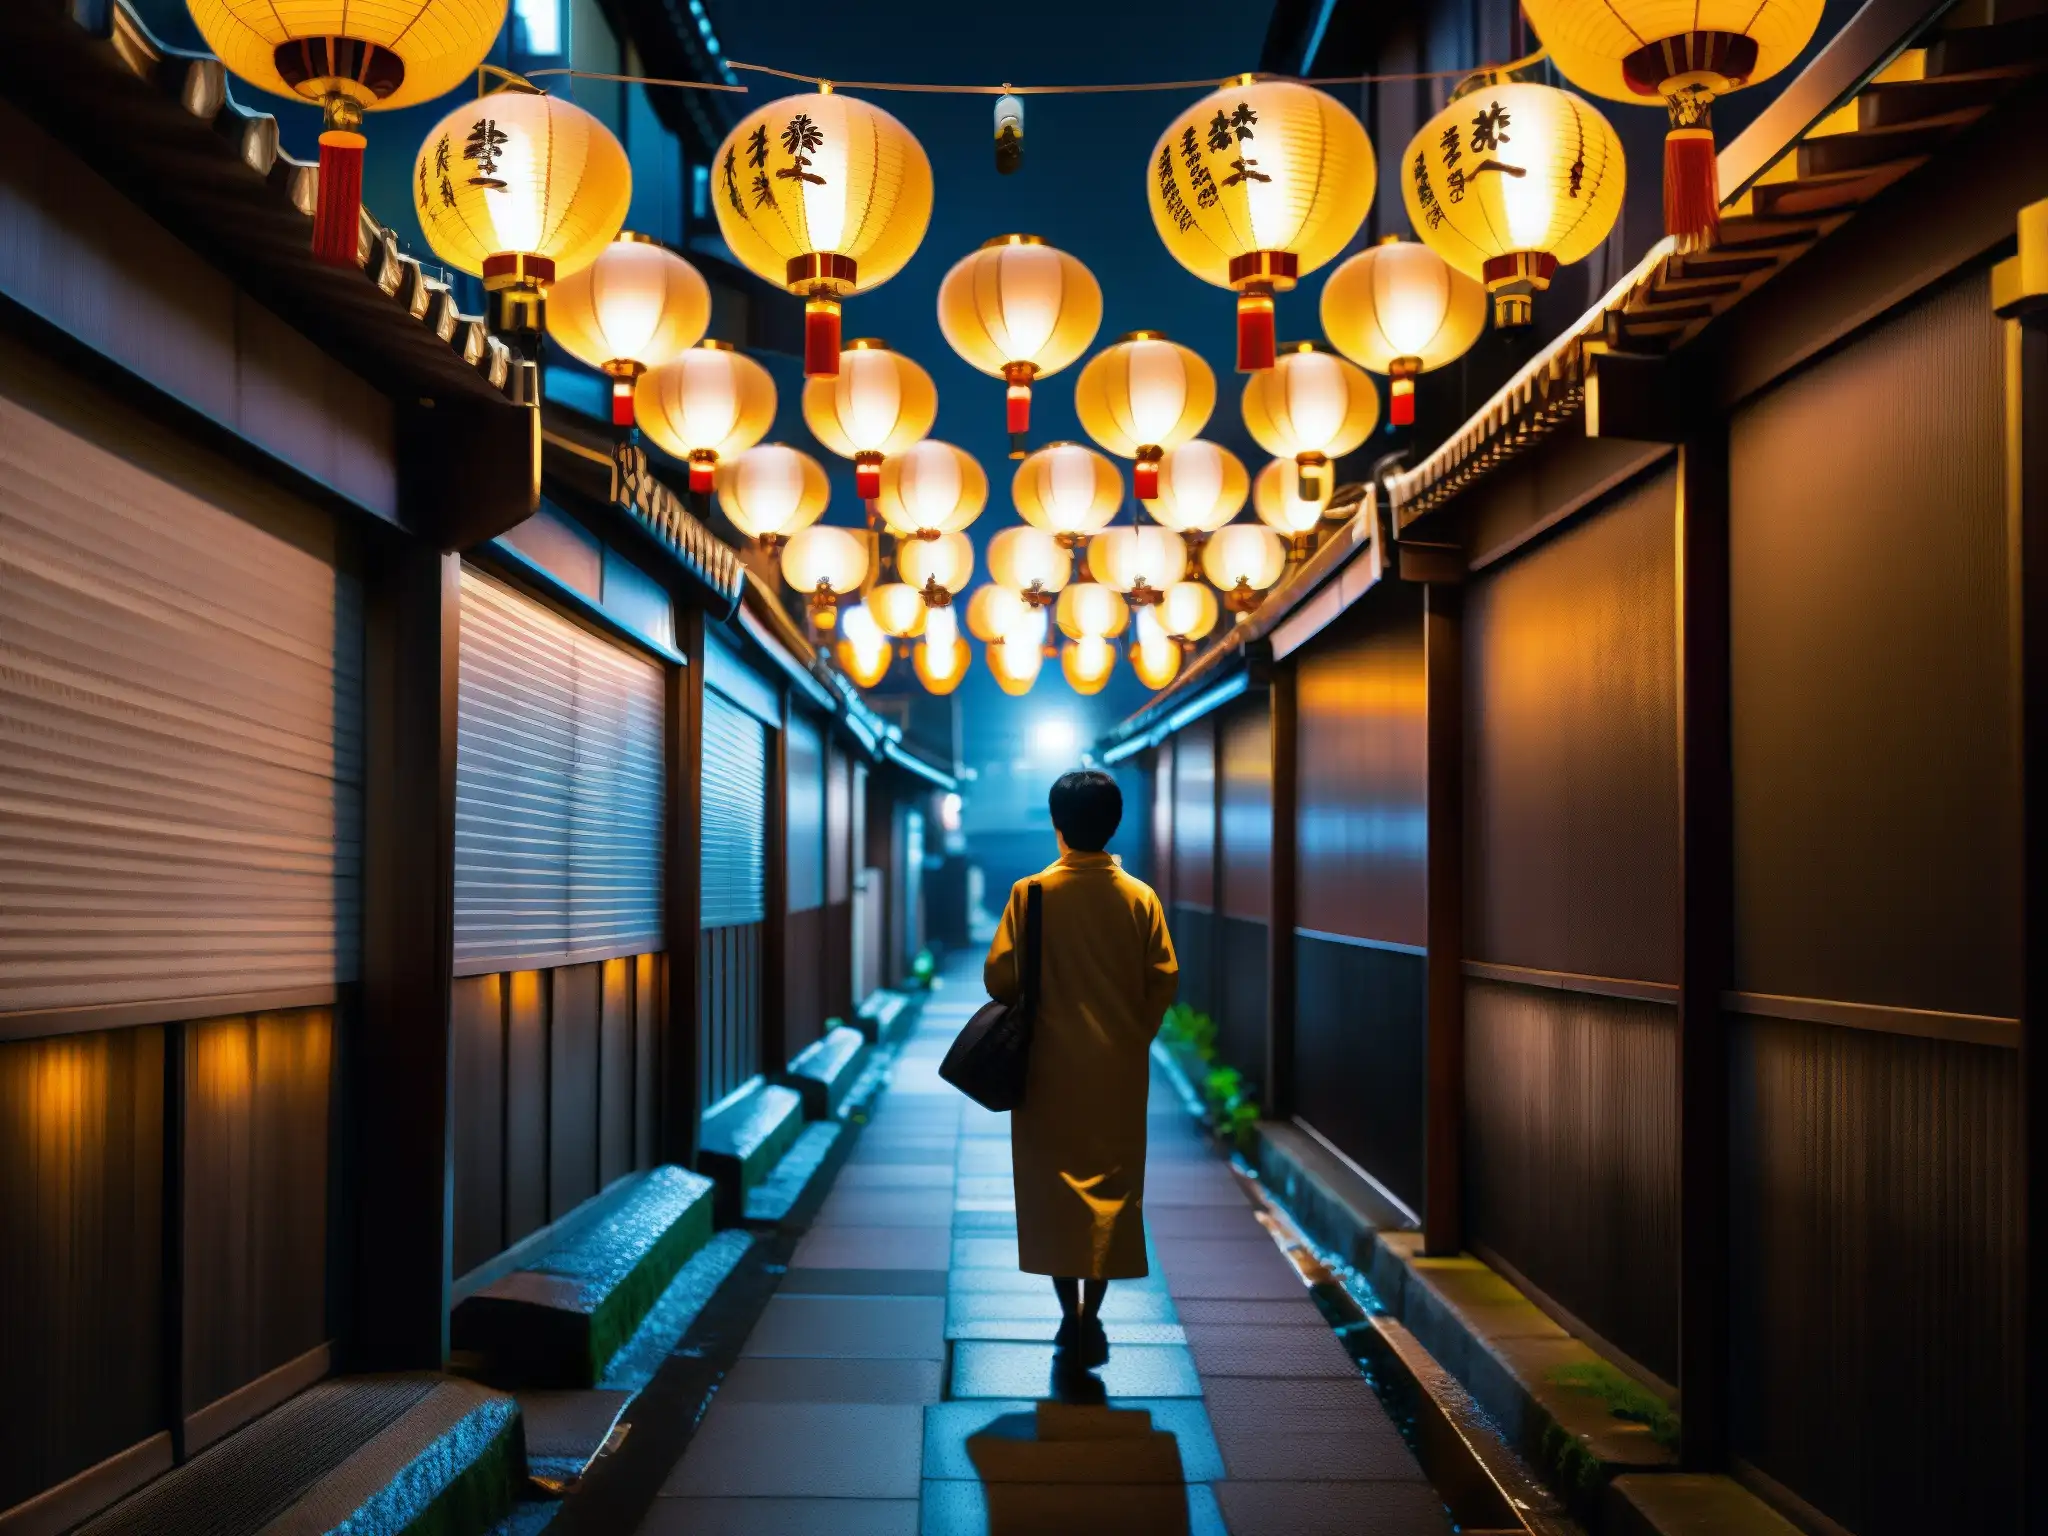 Un callejón urbano en Japón iluminado por faroles tradicionales, con una figura solitaria y su smartphone, reviviendo leyendas urbanas japonesas